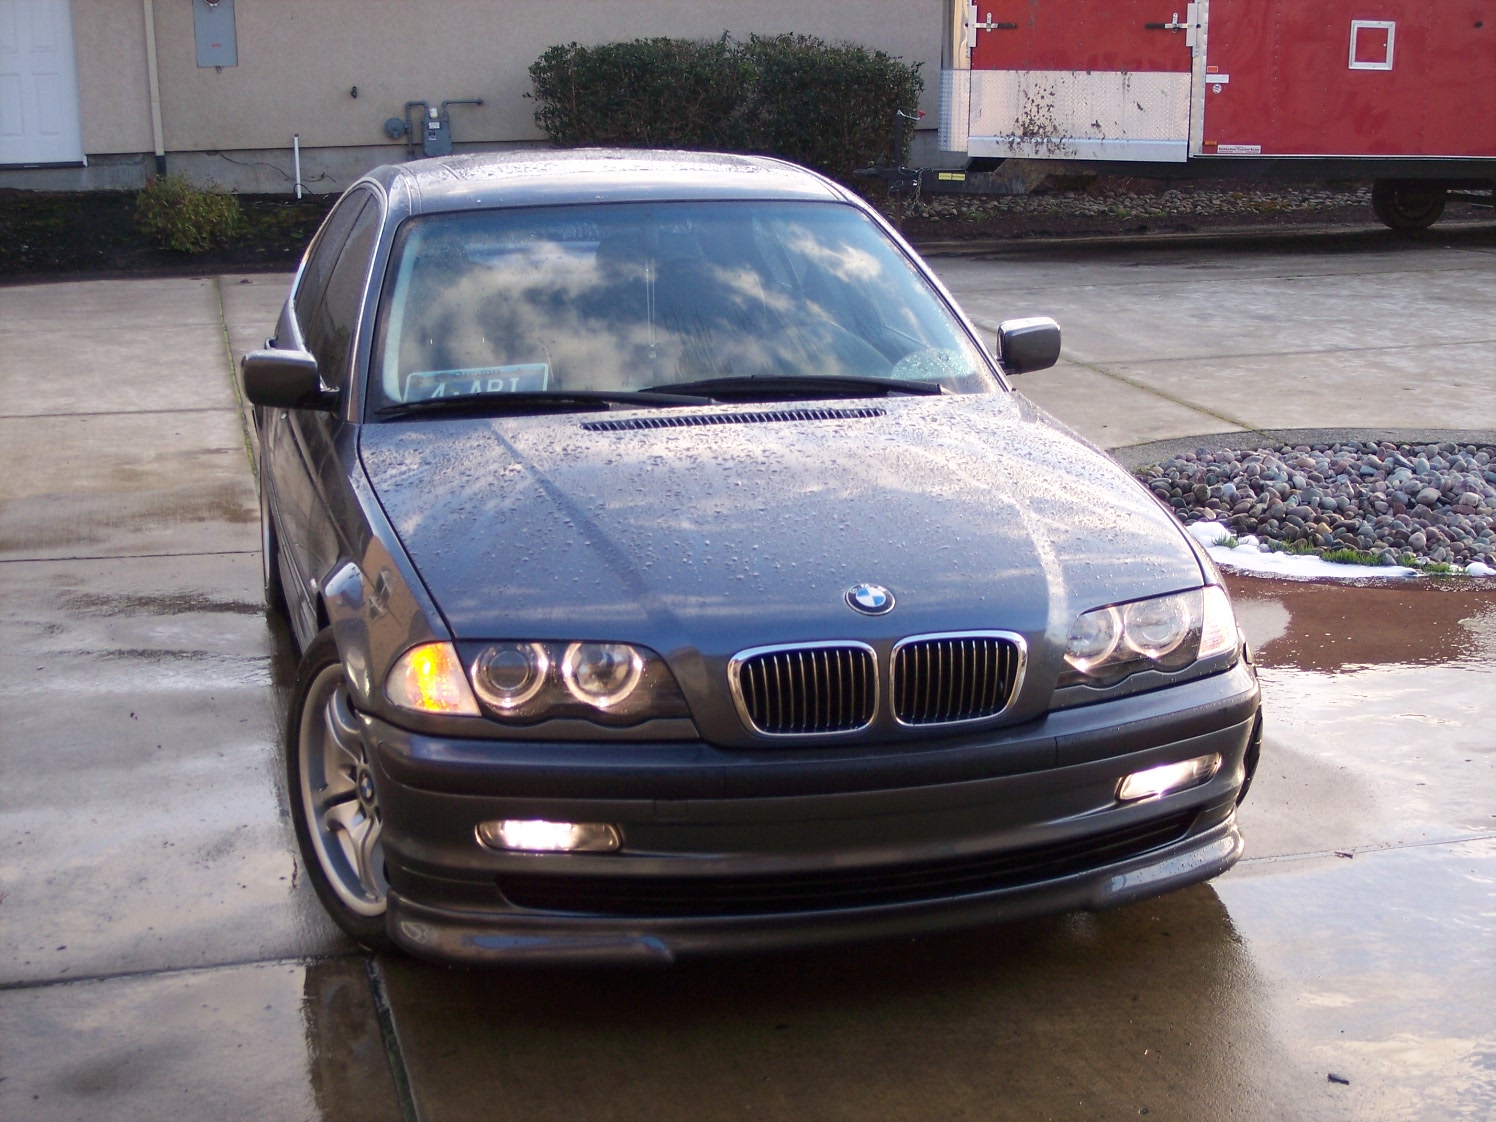 BMW 330Xi 2001 photo - 1